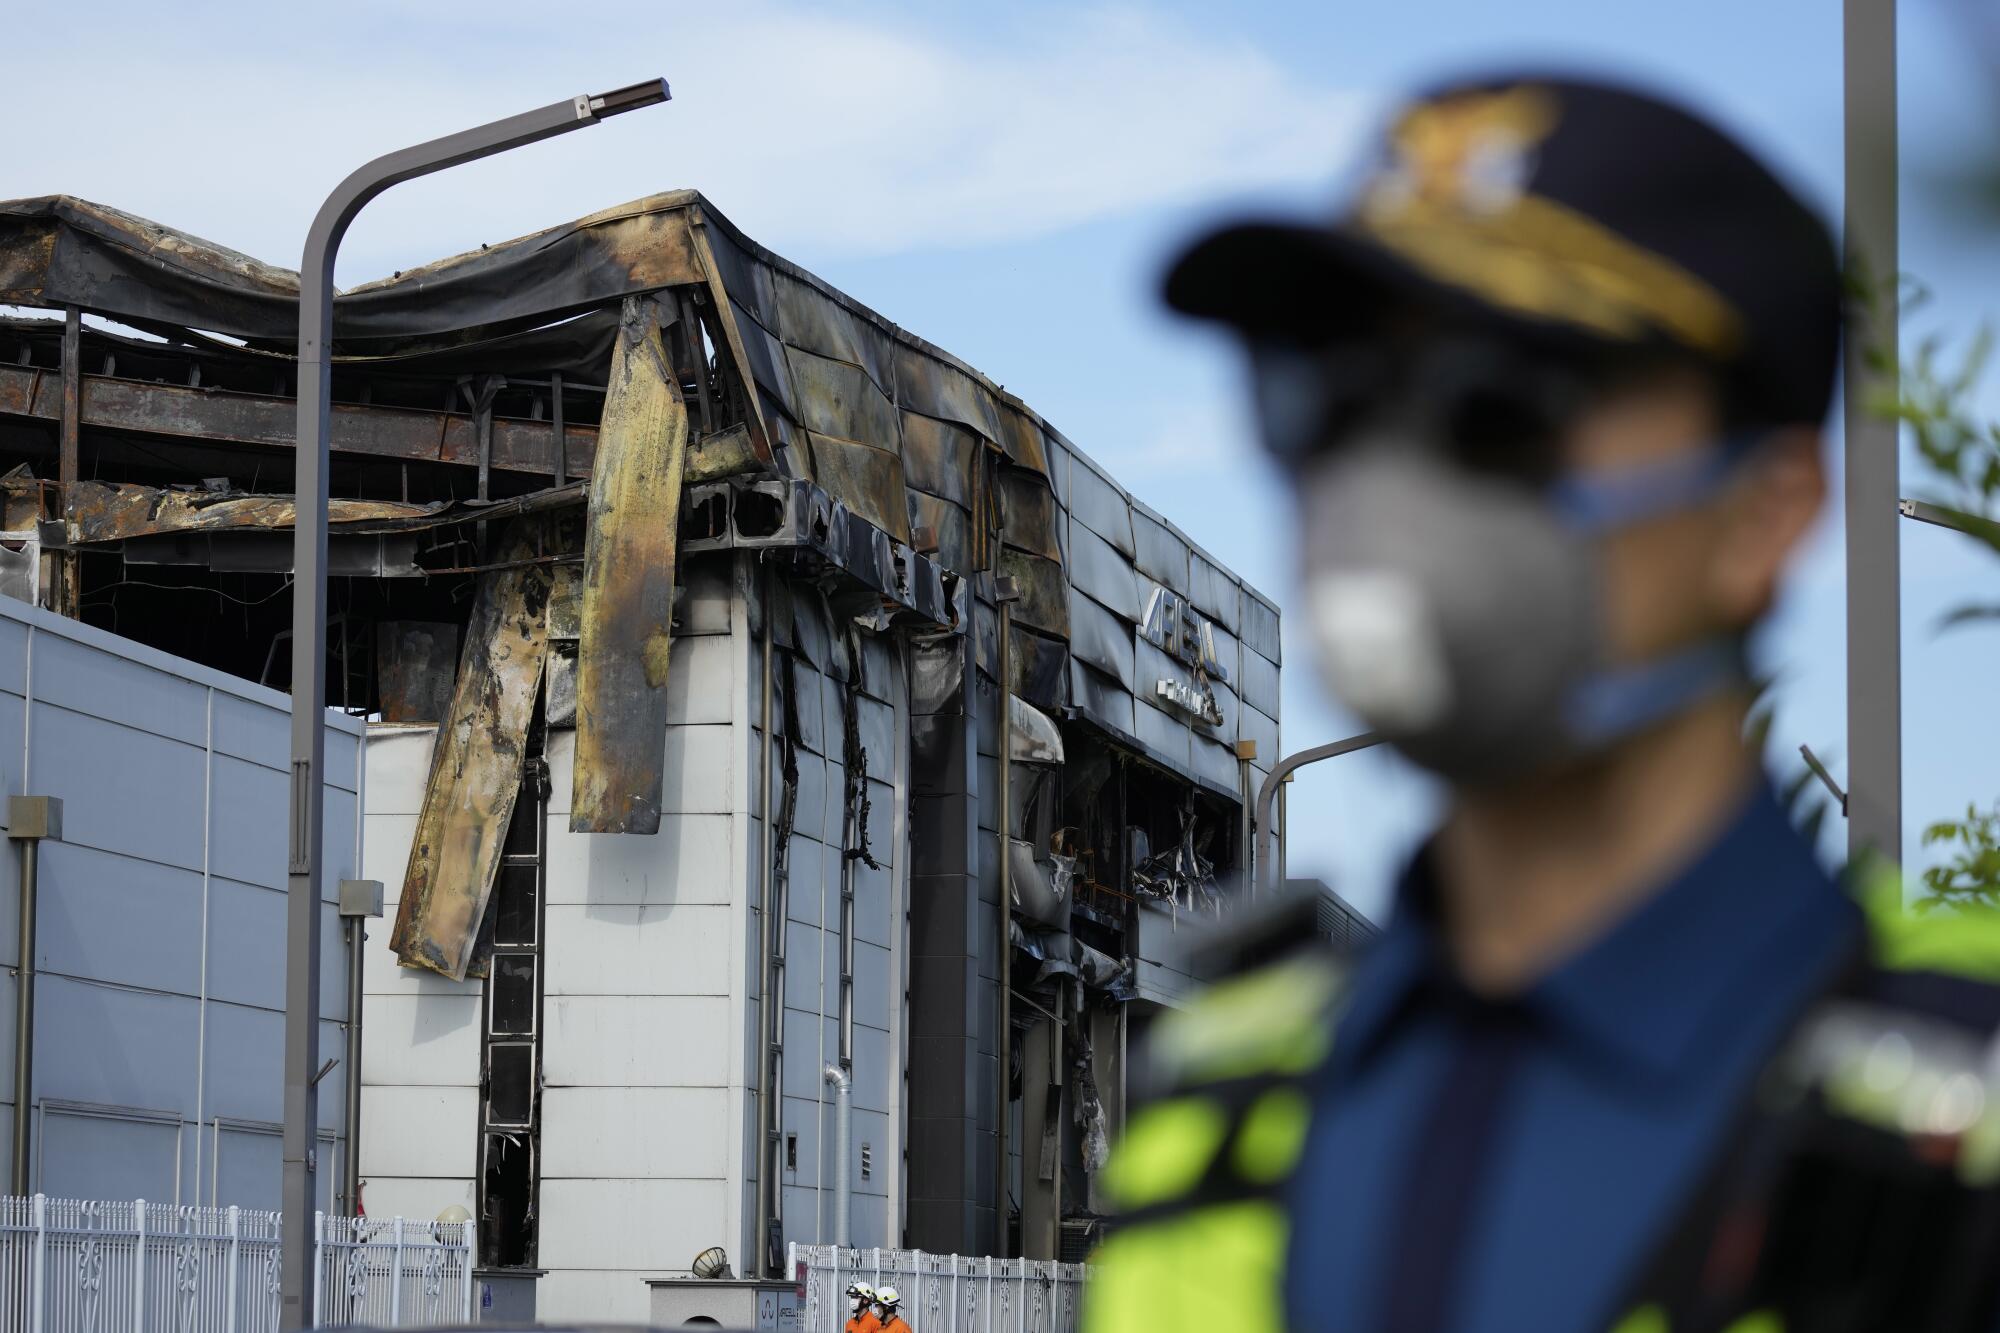 Un oficial de policía, desenfocado en el frente del encuadre, está parado frente a un edificio en llamas.